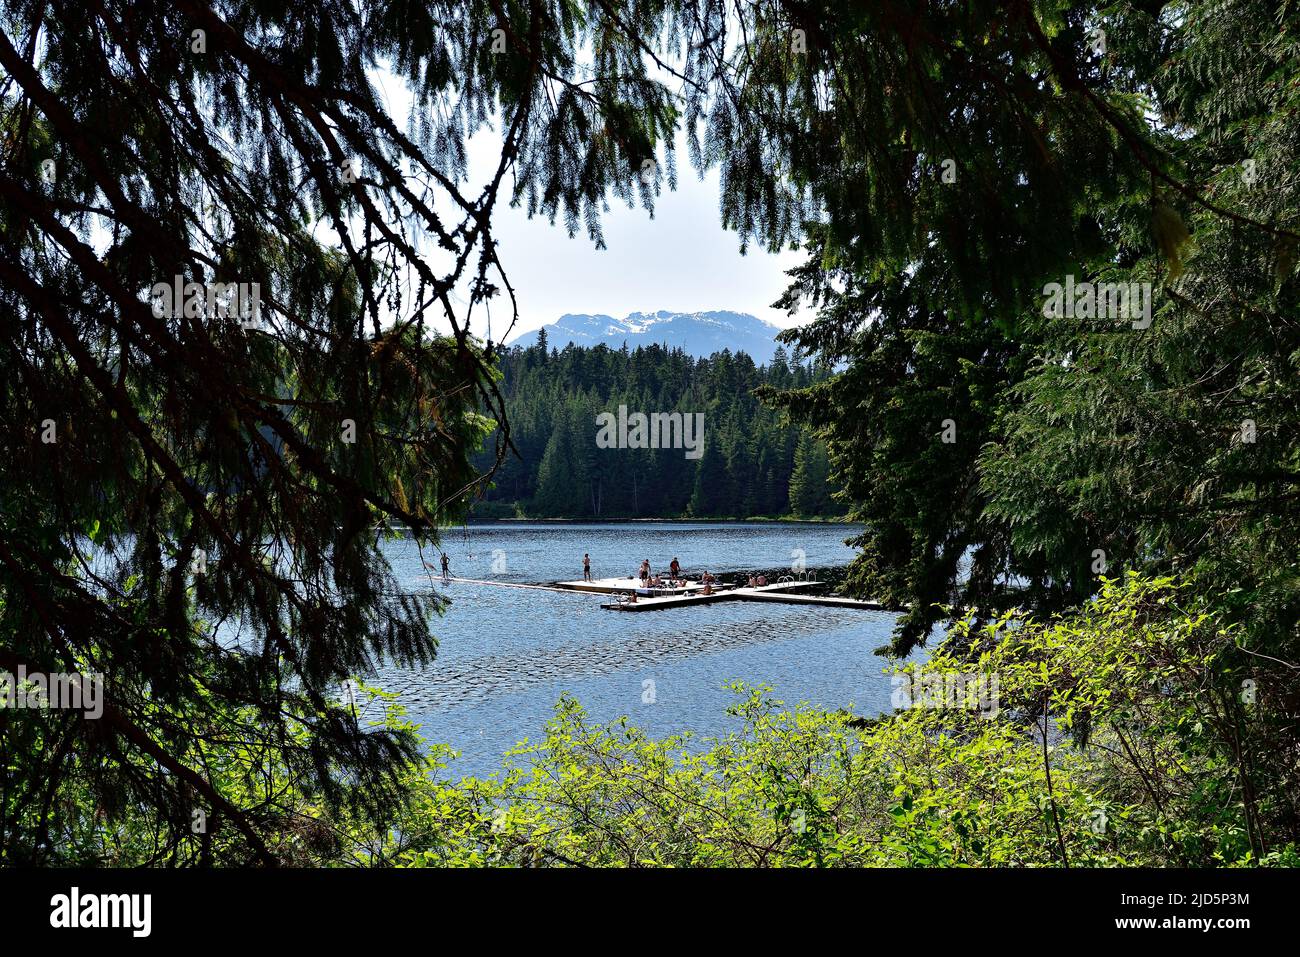 WHISTLER, BC, CANADA - 30 MAGGIO 2019: Lost Lake Park a Whistler, luogo ideale per nuotare, pescare, galleggiare, fare escursioni a piedi e in bicicletta Foto Stock